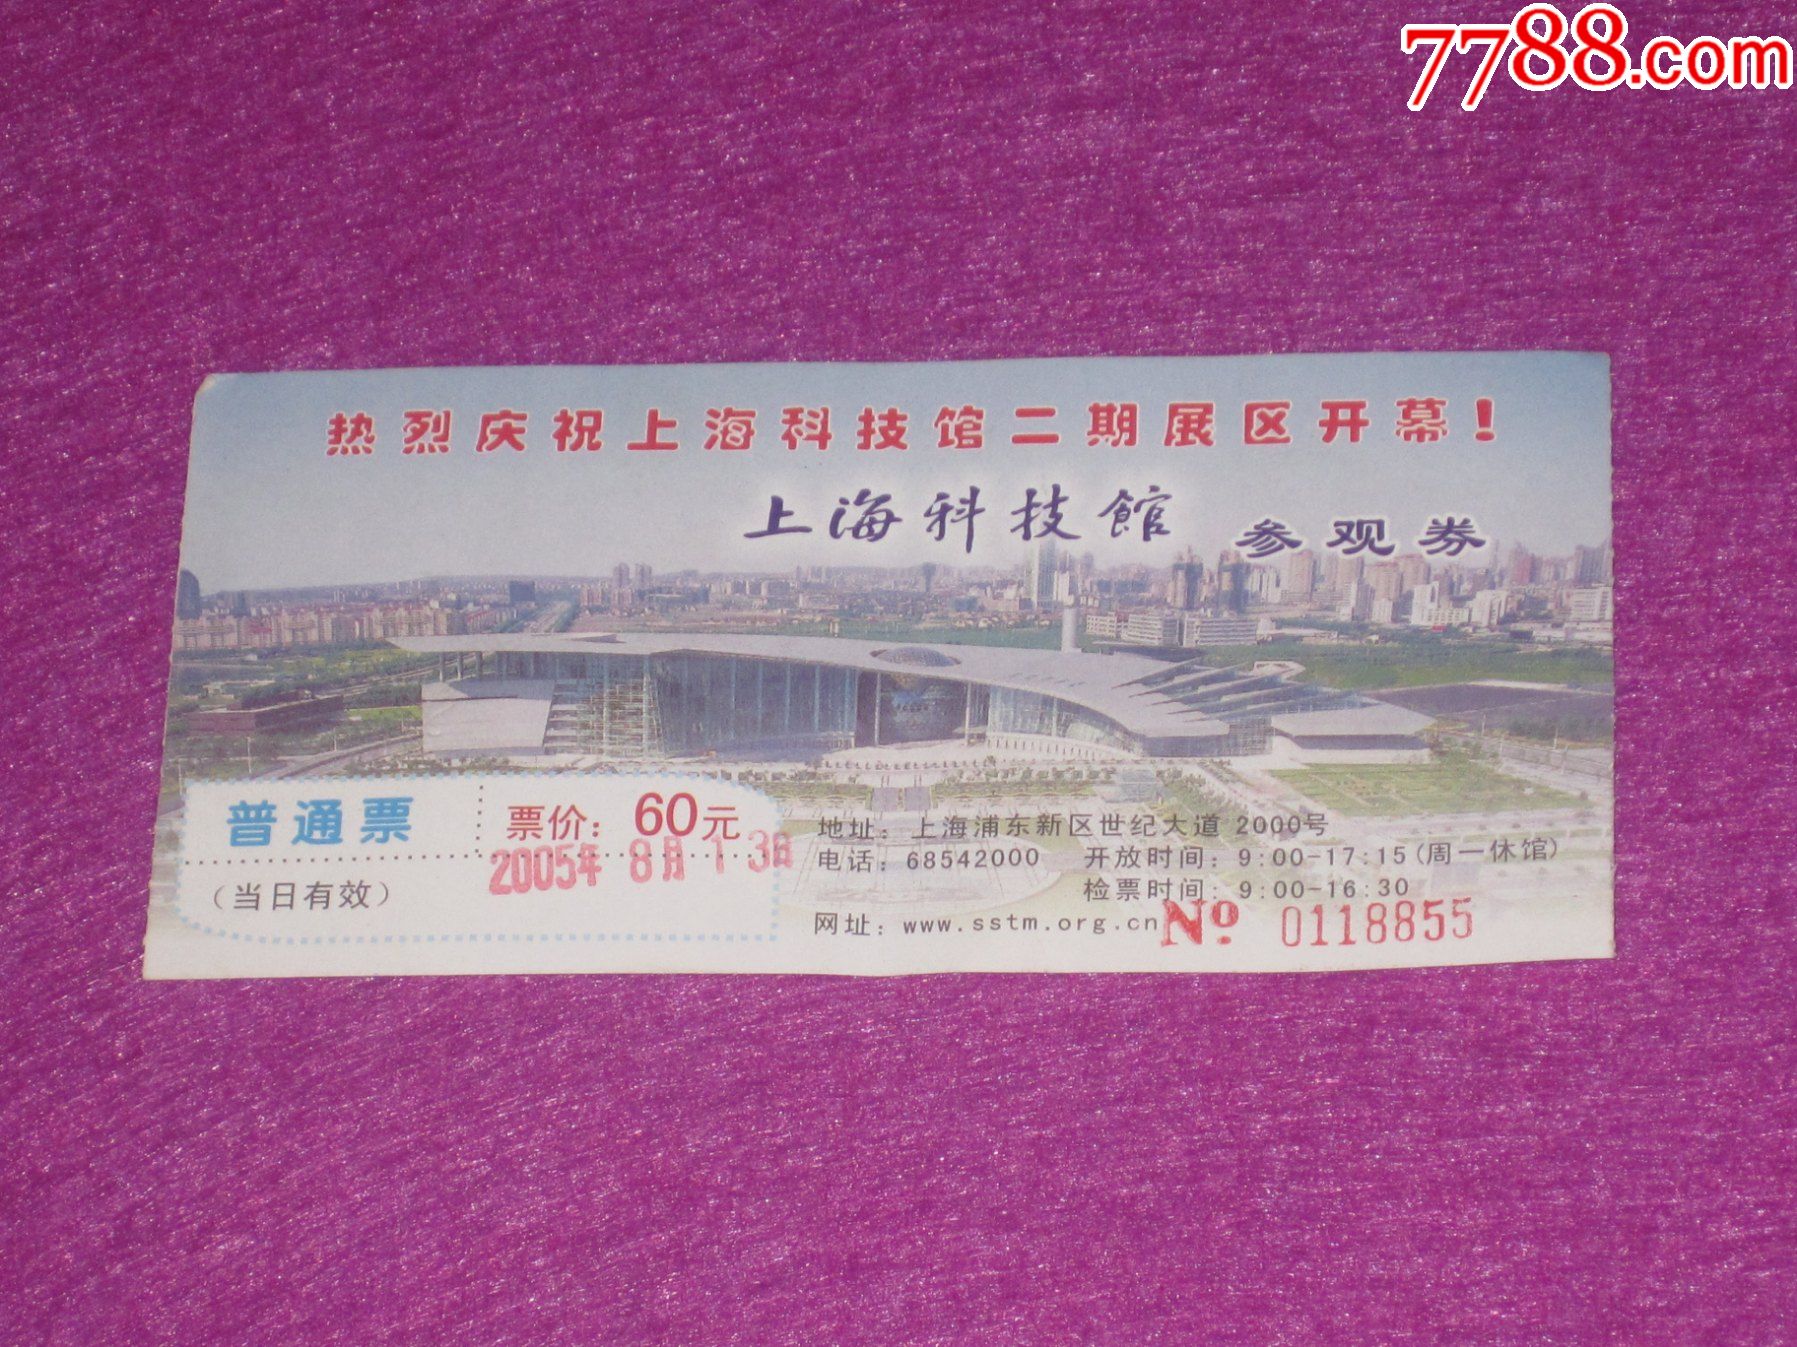 上海博物馆地址_美乐家上海生活馆地址_丹佛艺术博物设计师馆